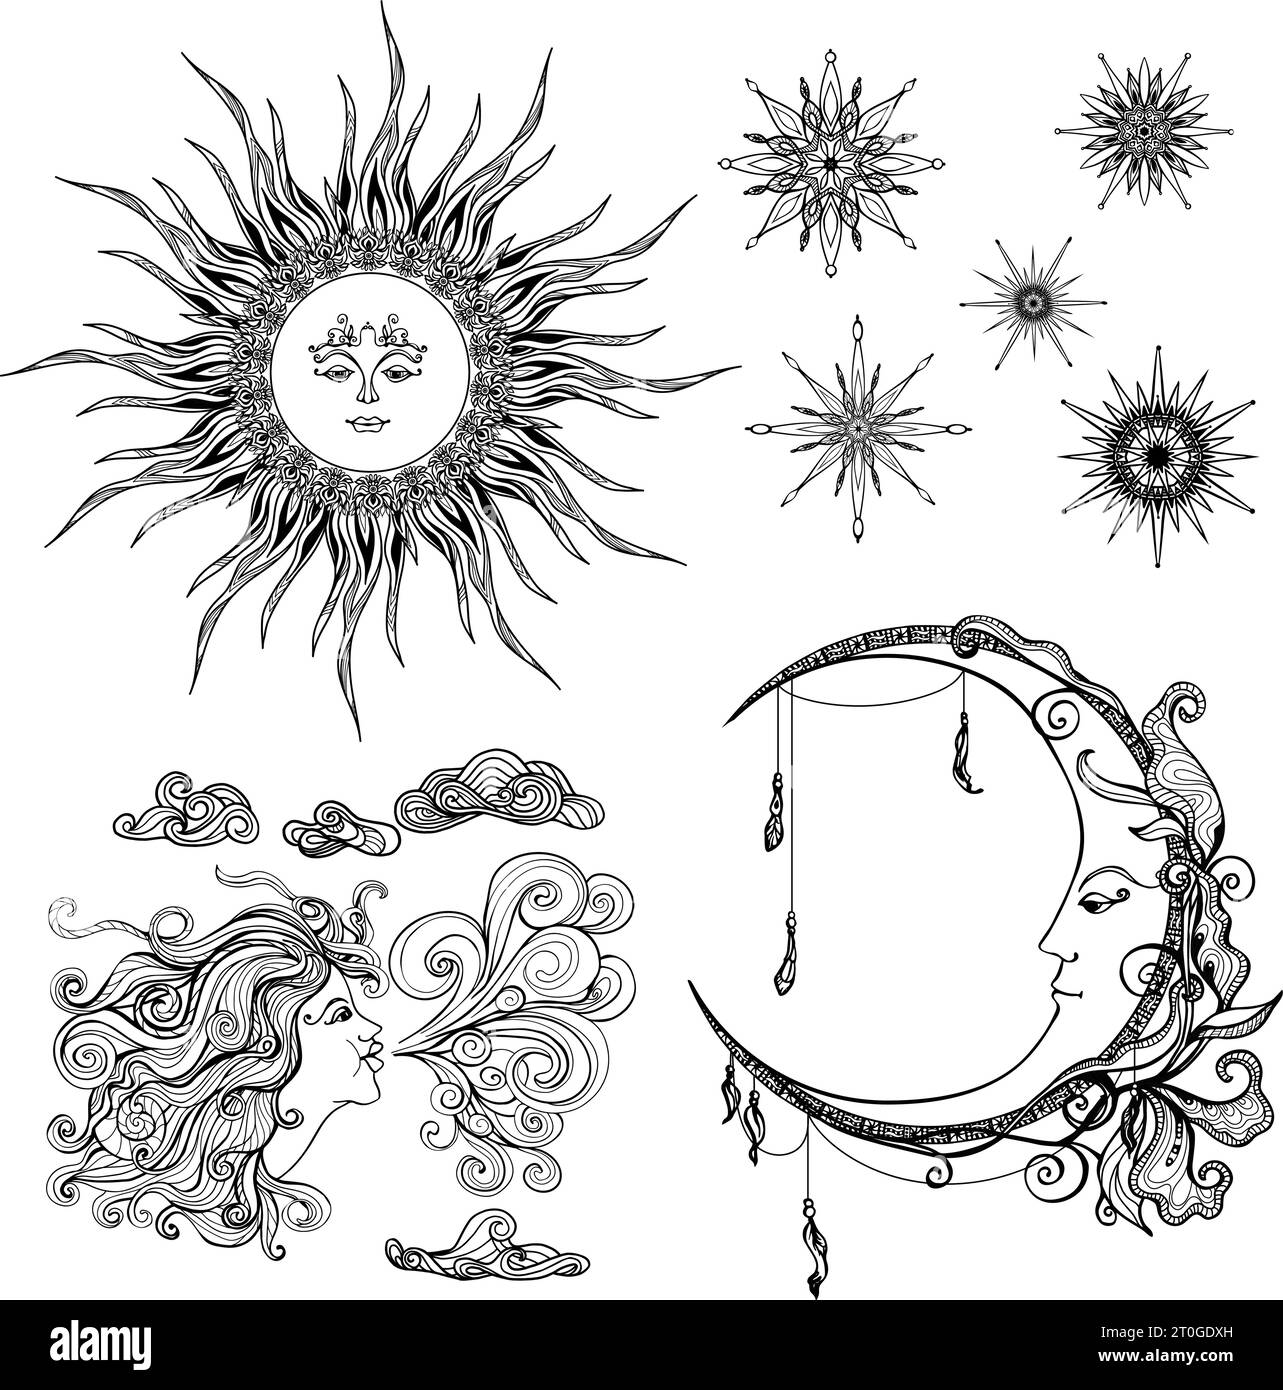 Le soleil de style conte de fées lune et le vent des symboles antropomorphiques ensemble des illustrations vectorielles isolées Illustration de Vecteur